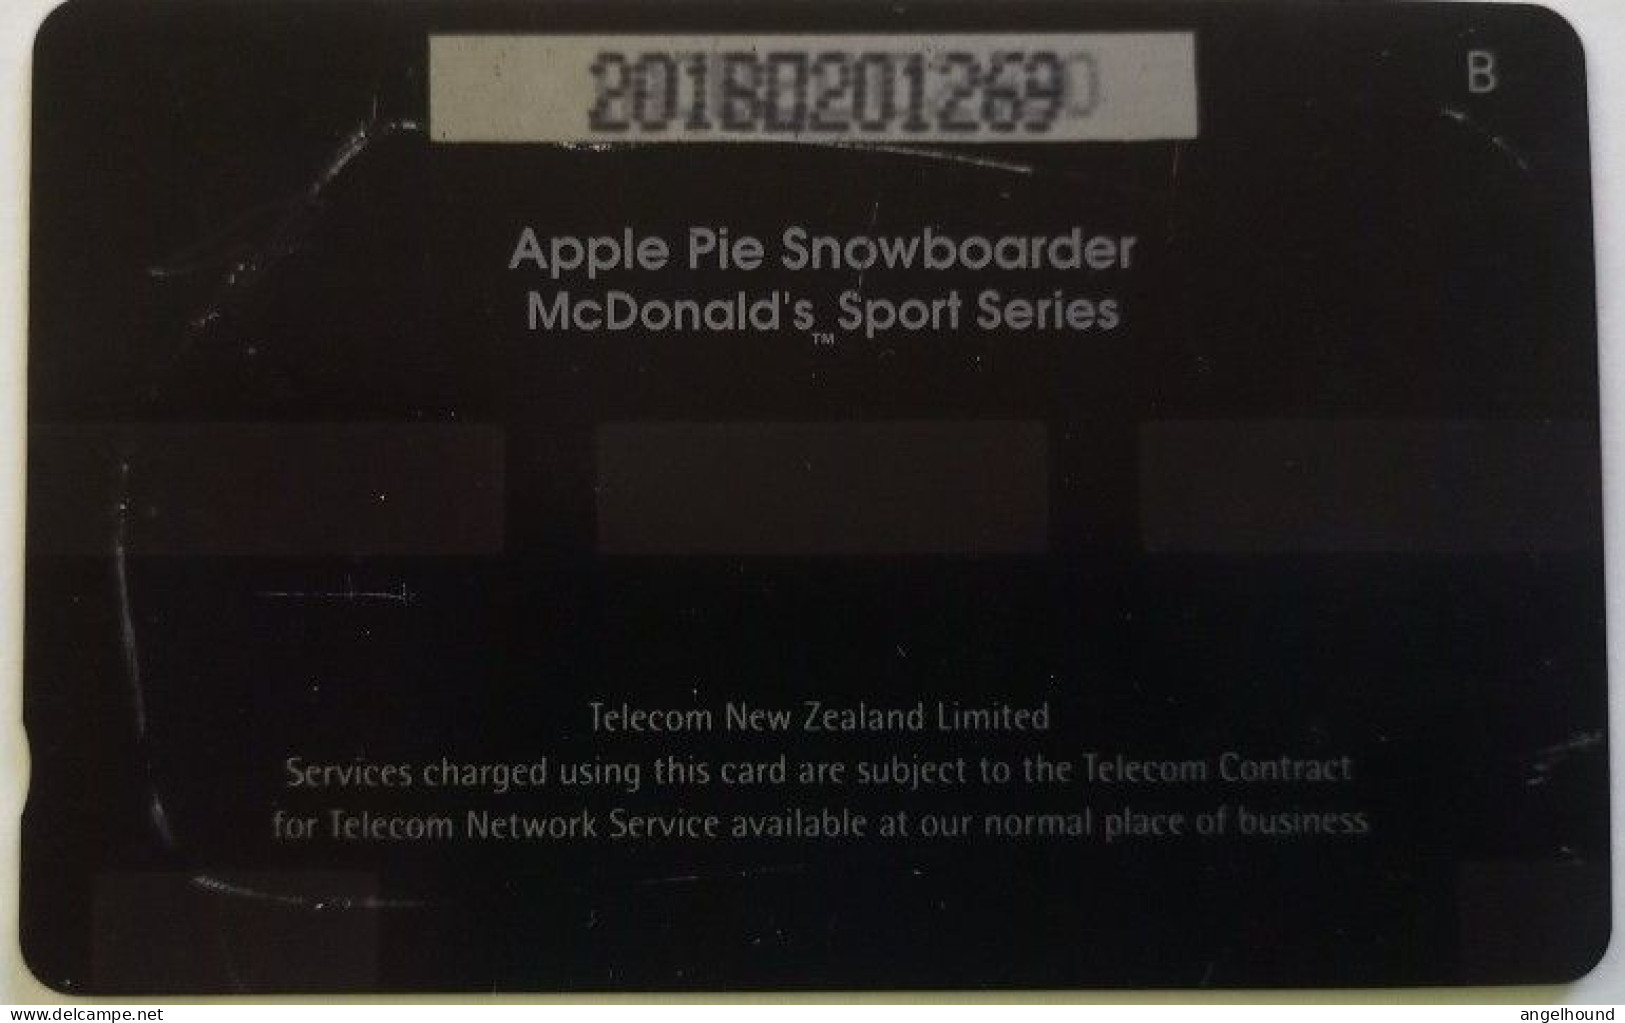 New Zealand $5 GPT 201B - Apple Pie Snowboarder - New Zealand